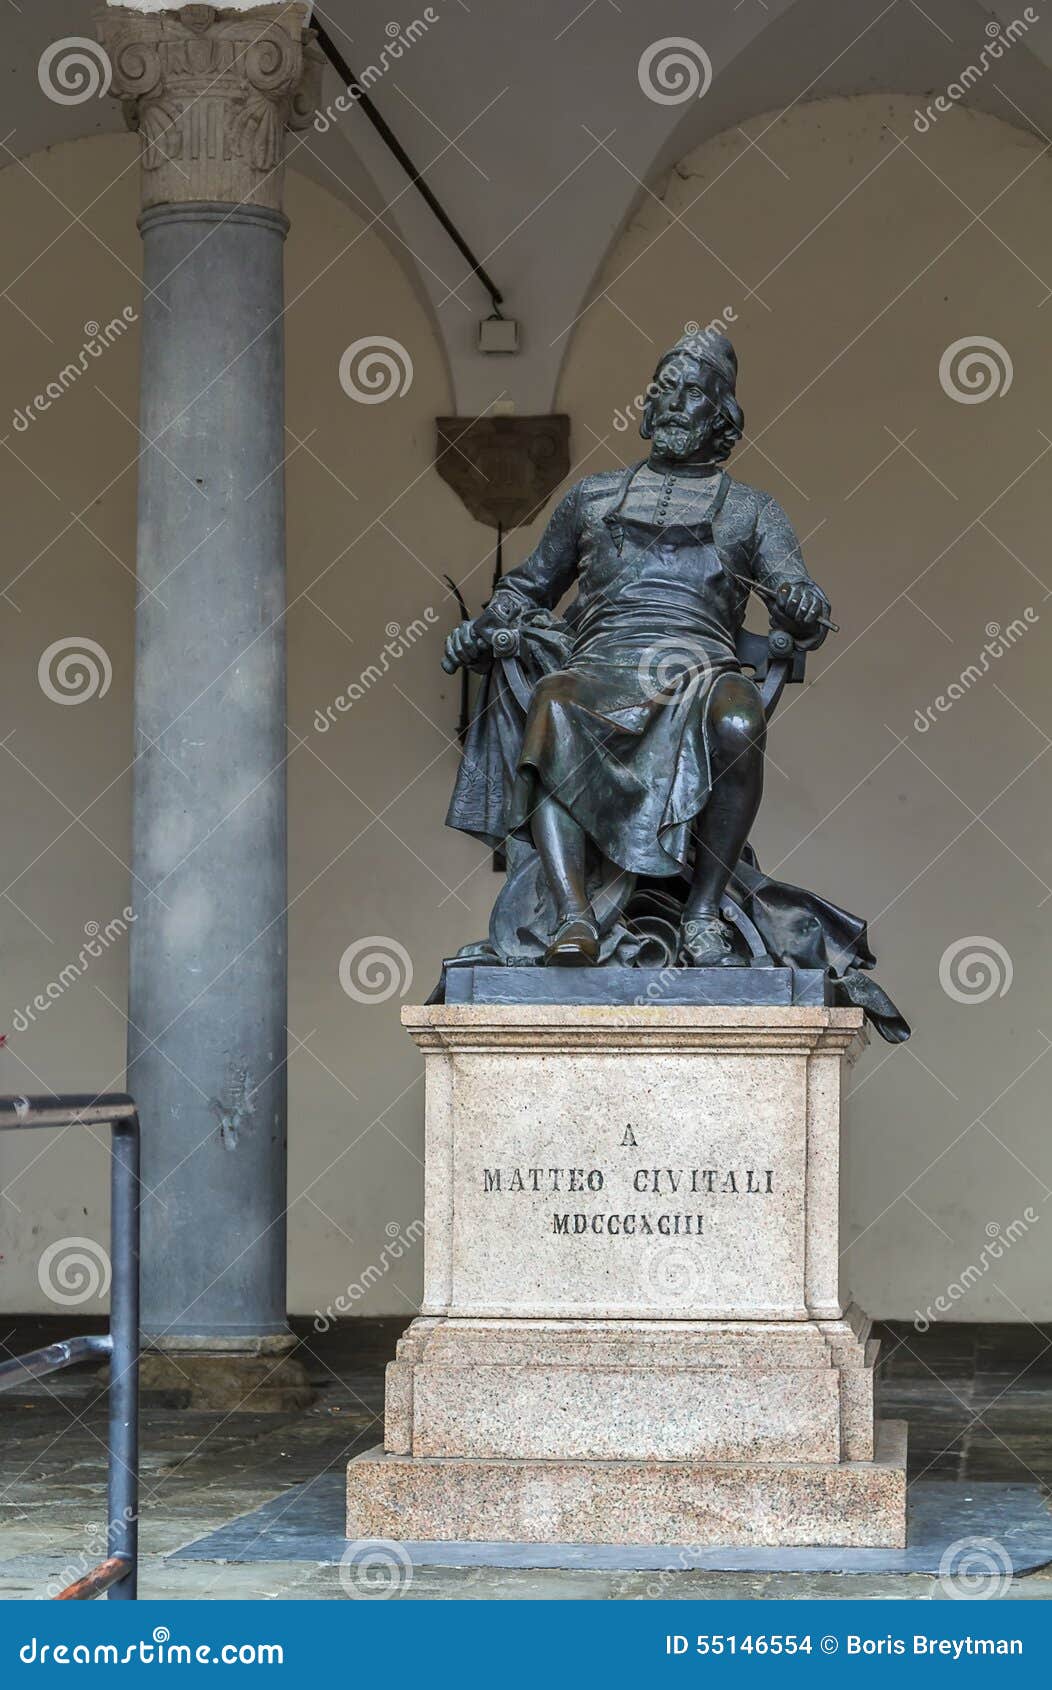 statue of a matteo civitali, lucca, italy